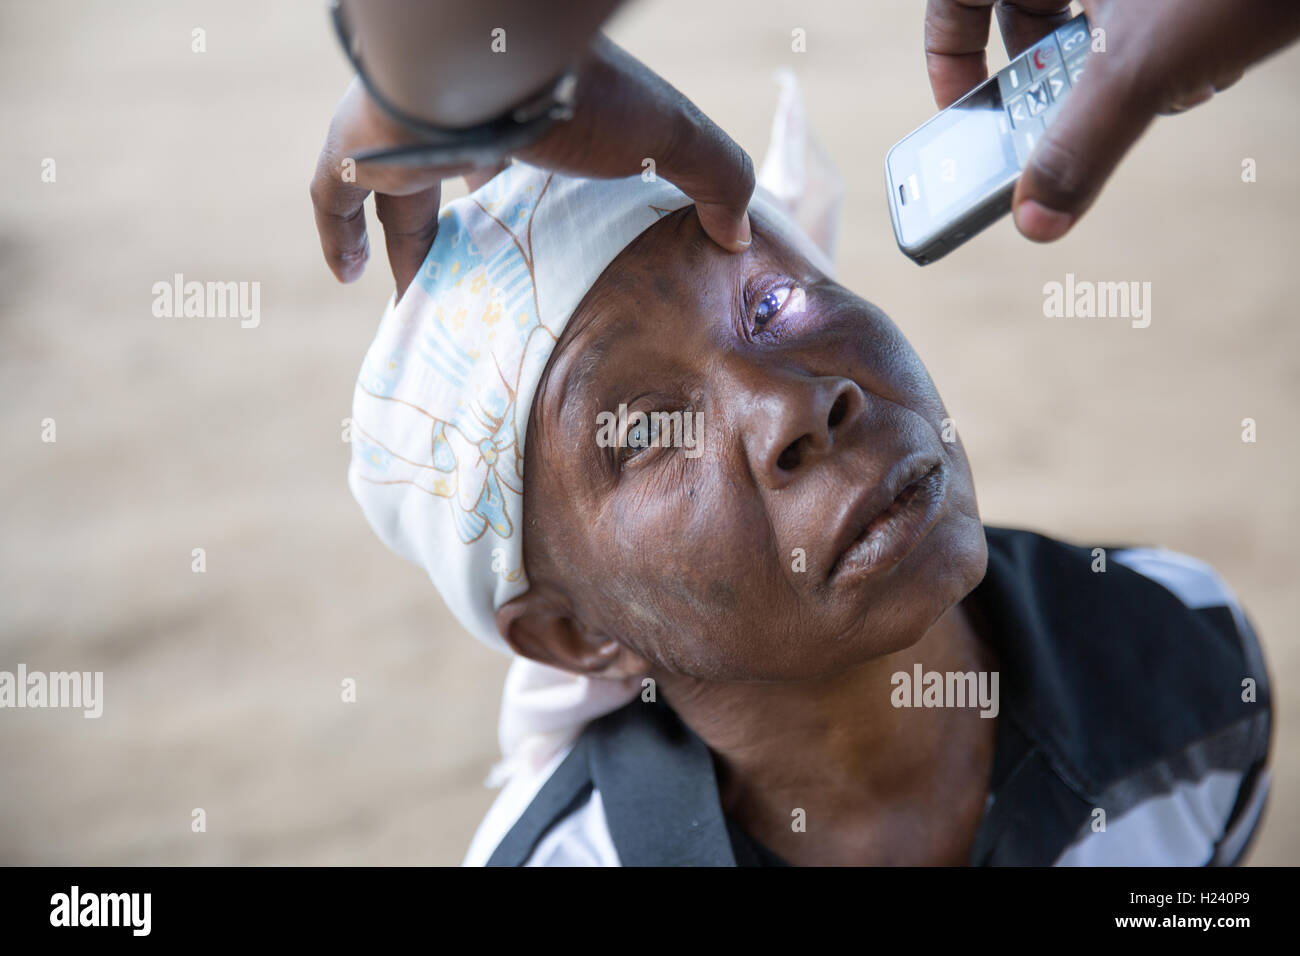 Città Lalaua, Nampula Provincia, Mozambico, Agosto 2015: una donna con cataratta bilaterale saranno prese per Ribaue ospedale a che esse vengano rimosse. Foto di Mike Goldwater Foto Stock